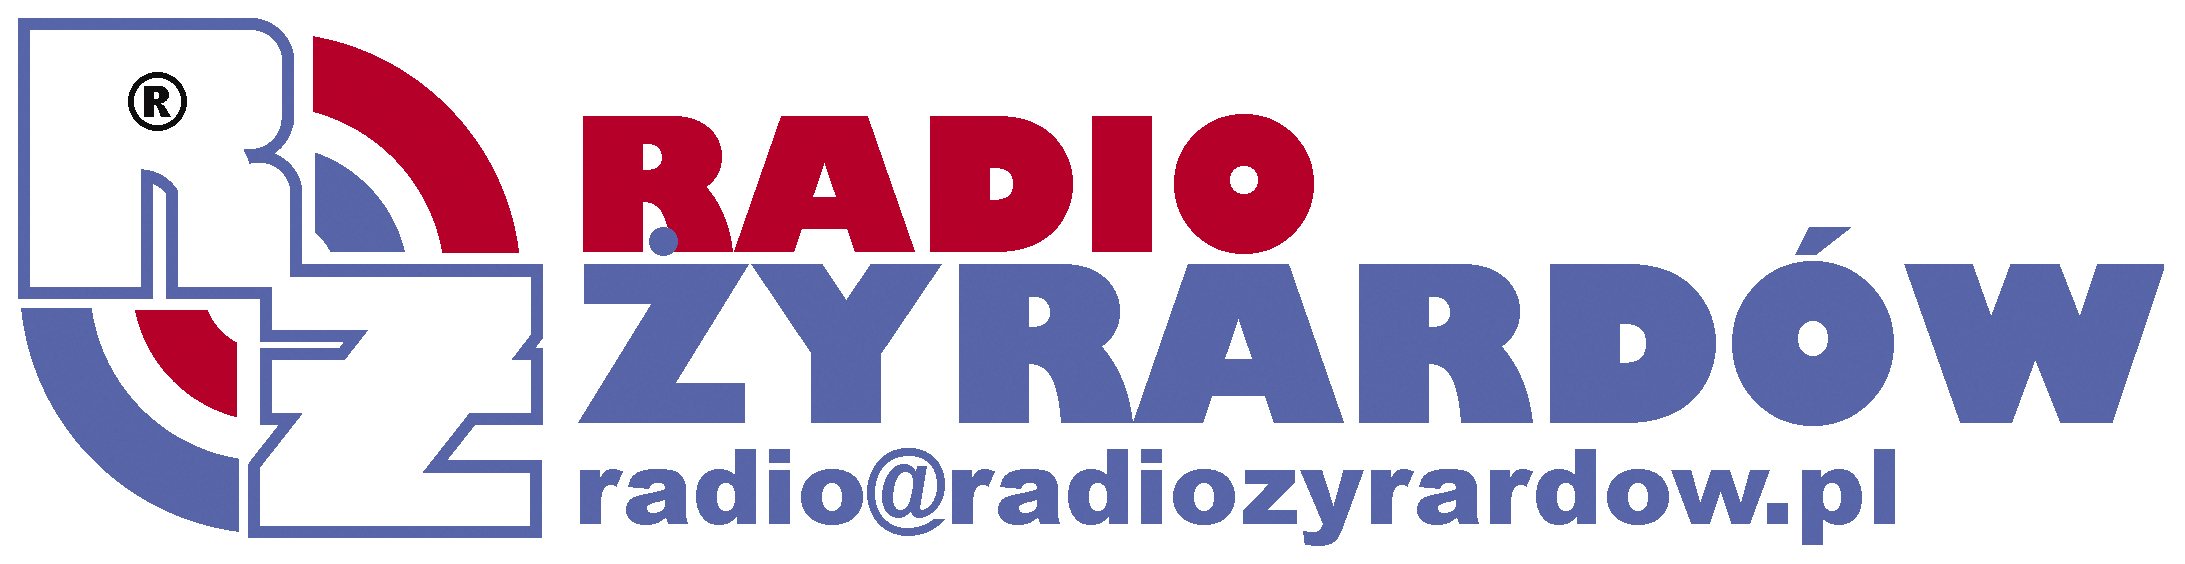 logo radio zyrardow